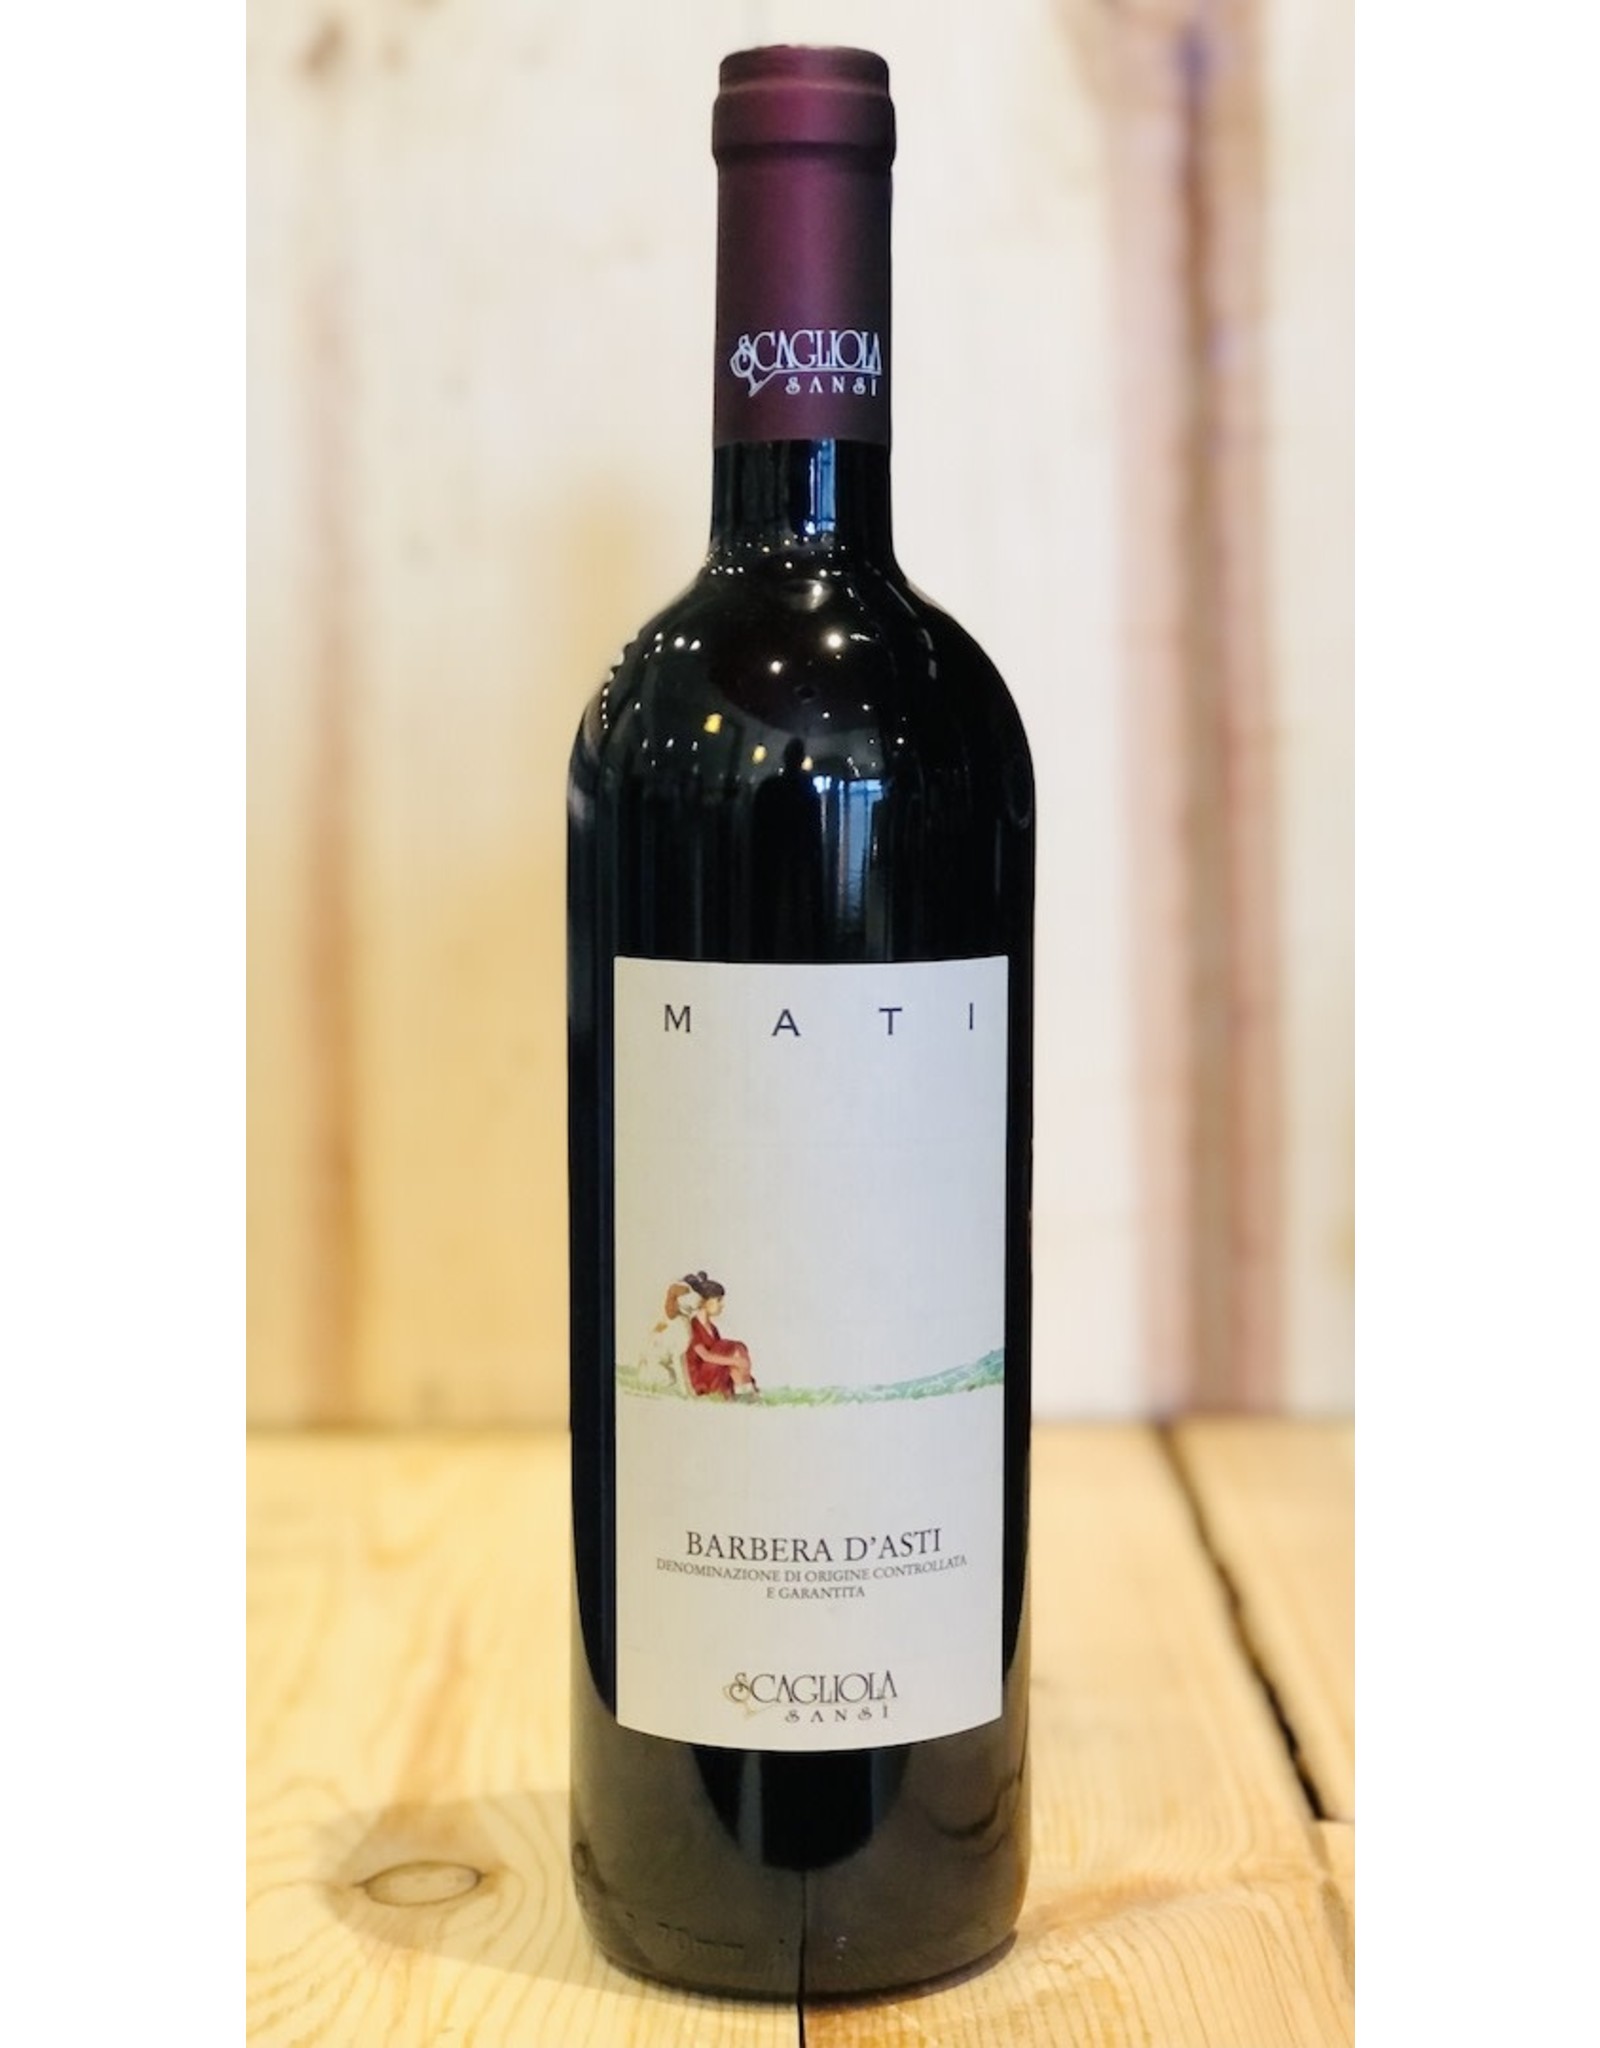 Wine Scagliola Mati Barbera d'Asti